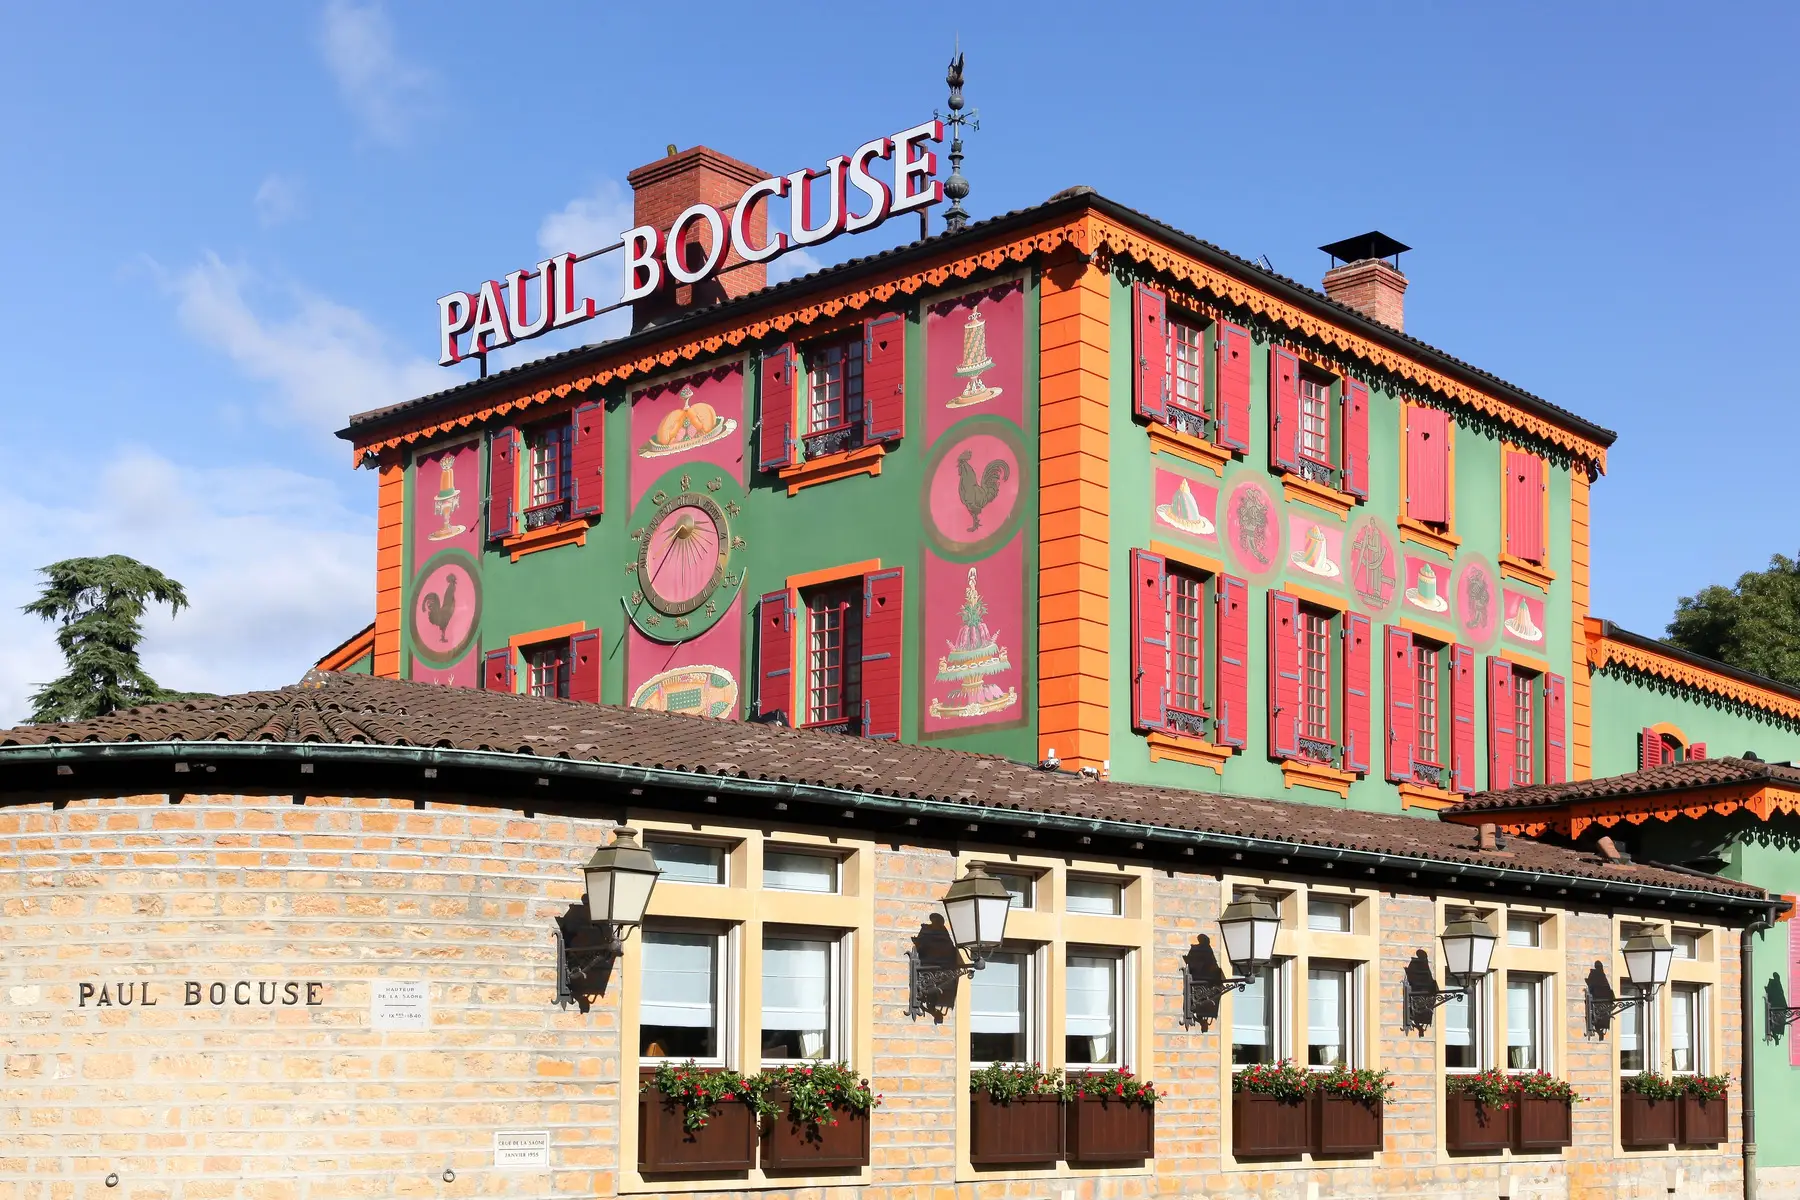 Restaurant Paul Bocuse in Lyon